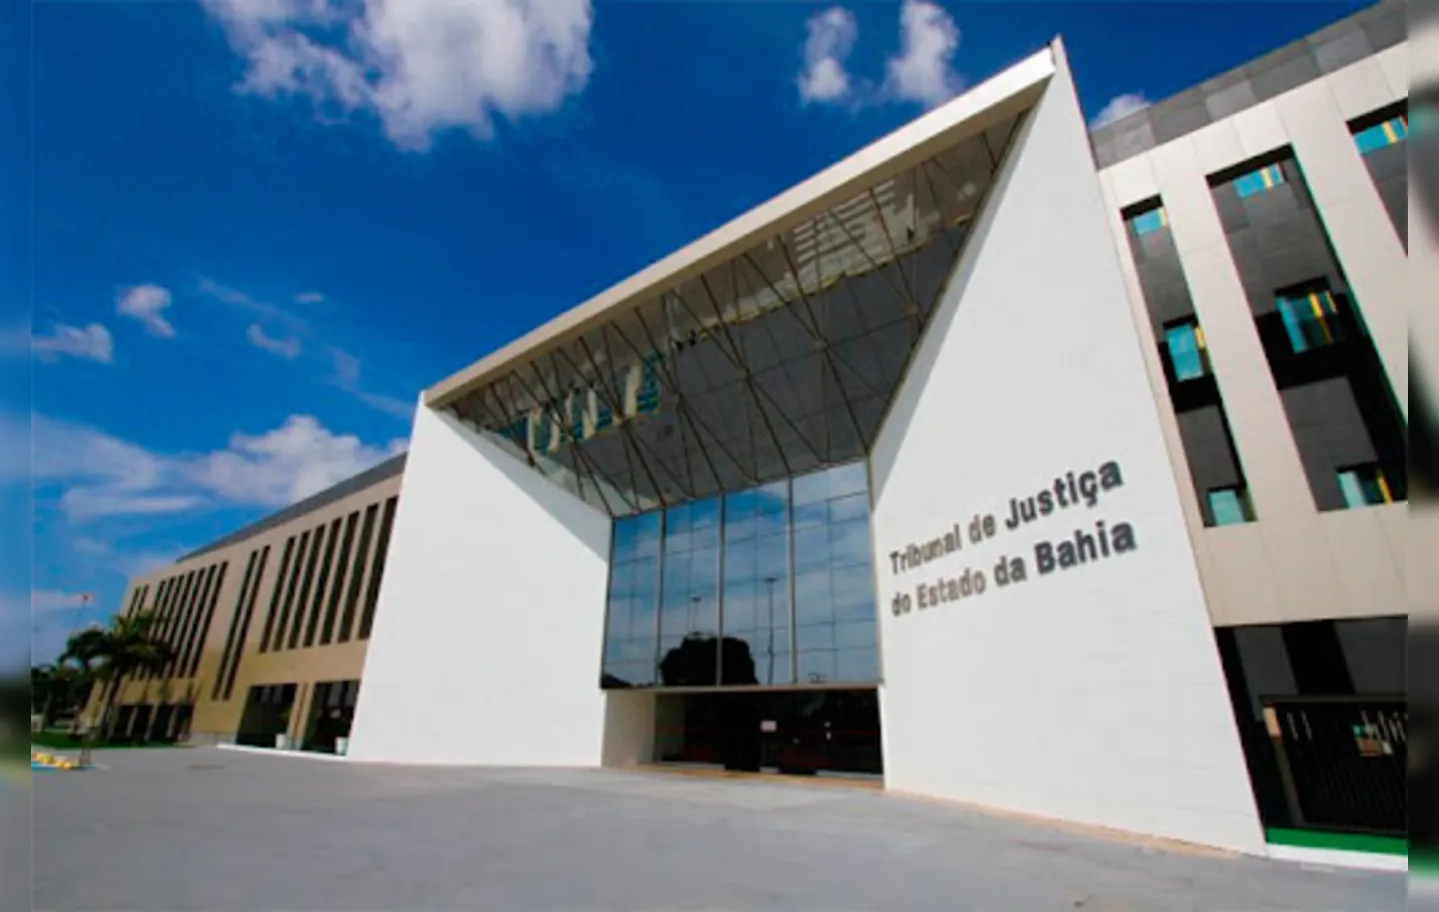 Sede do Tribunal de Justiça do Estado da Bahia (TJBA), em Salvador